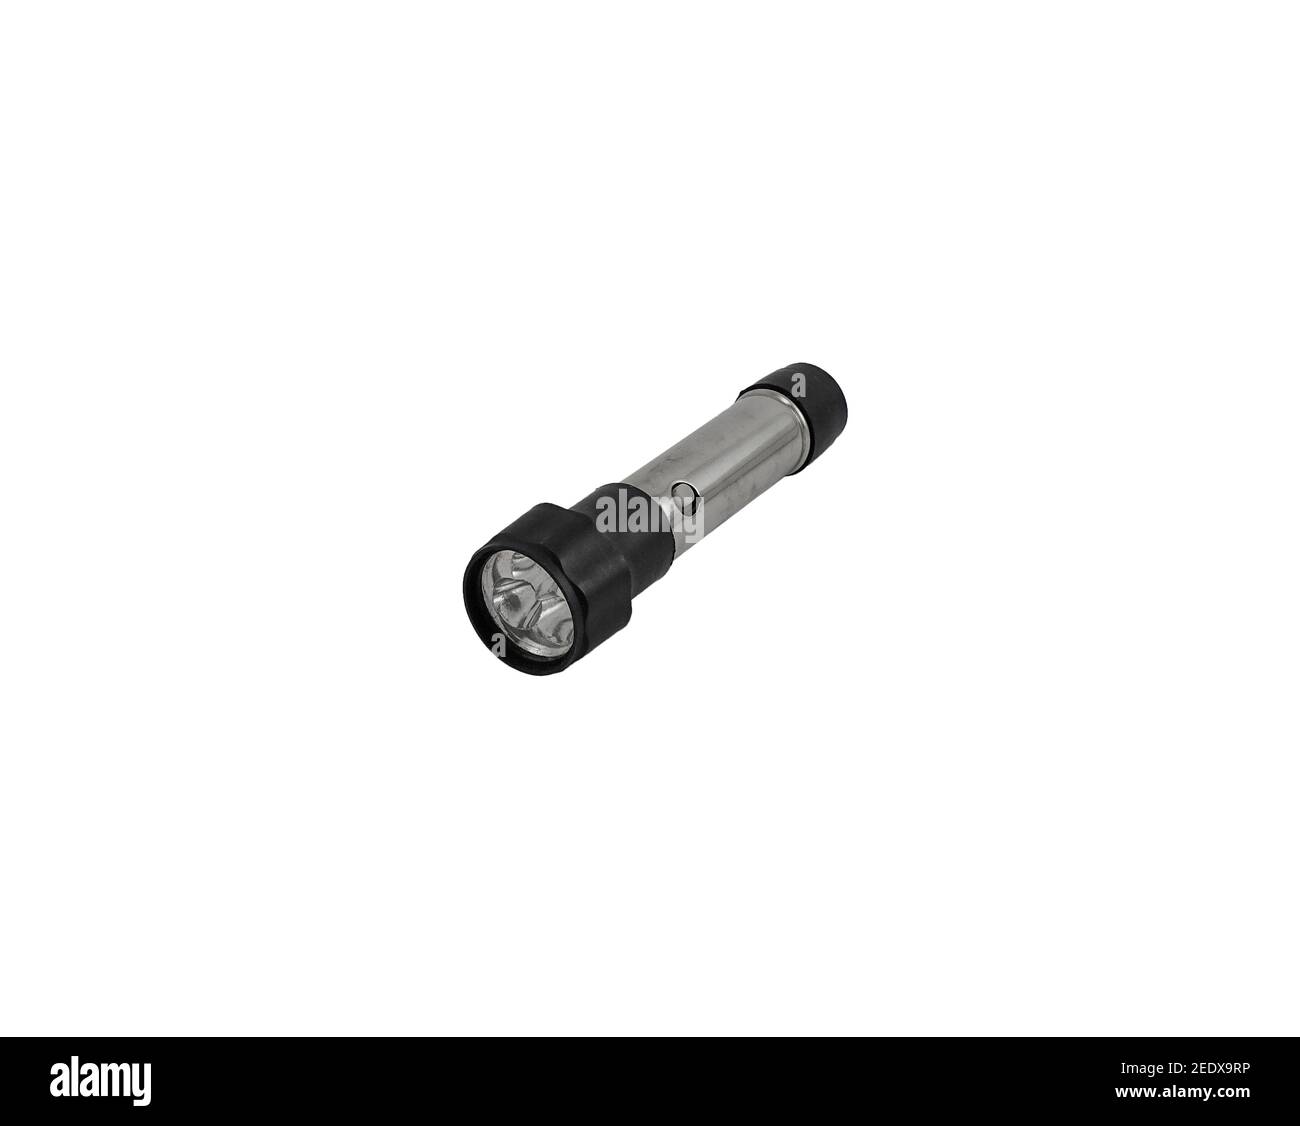 Kleinere Taschenlampe mit Metallgehäuse und Kunststoff-Glühbirne Kopf  Stockfotografie - Alamy